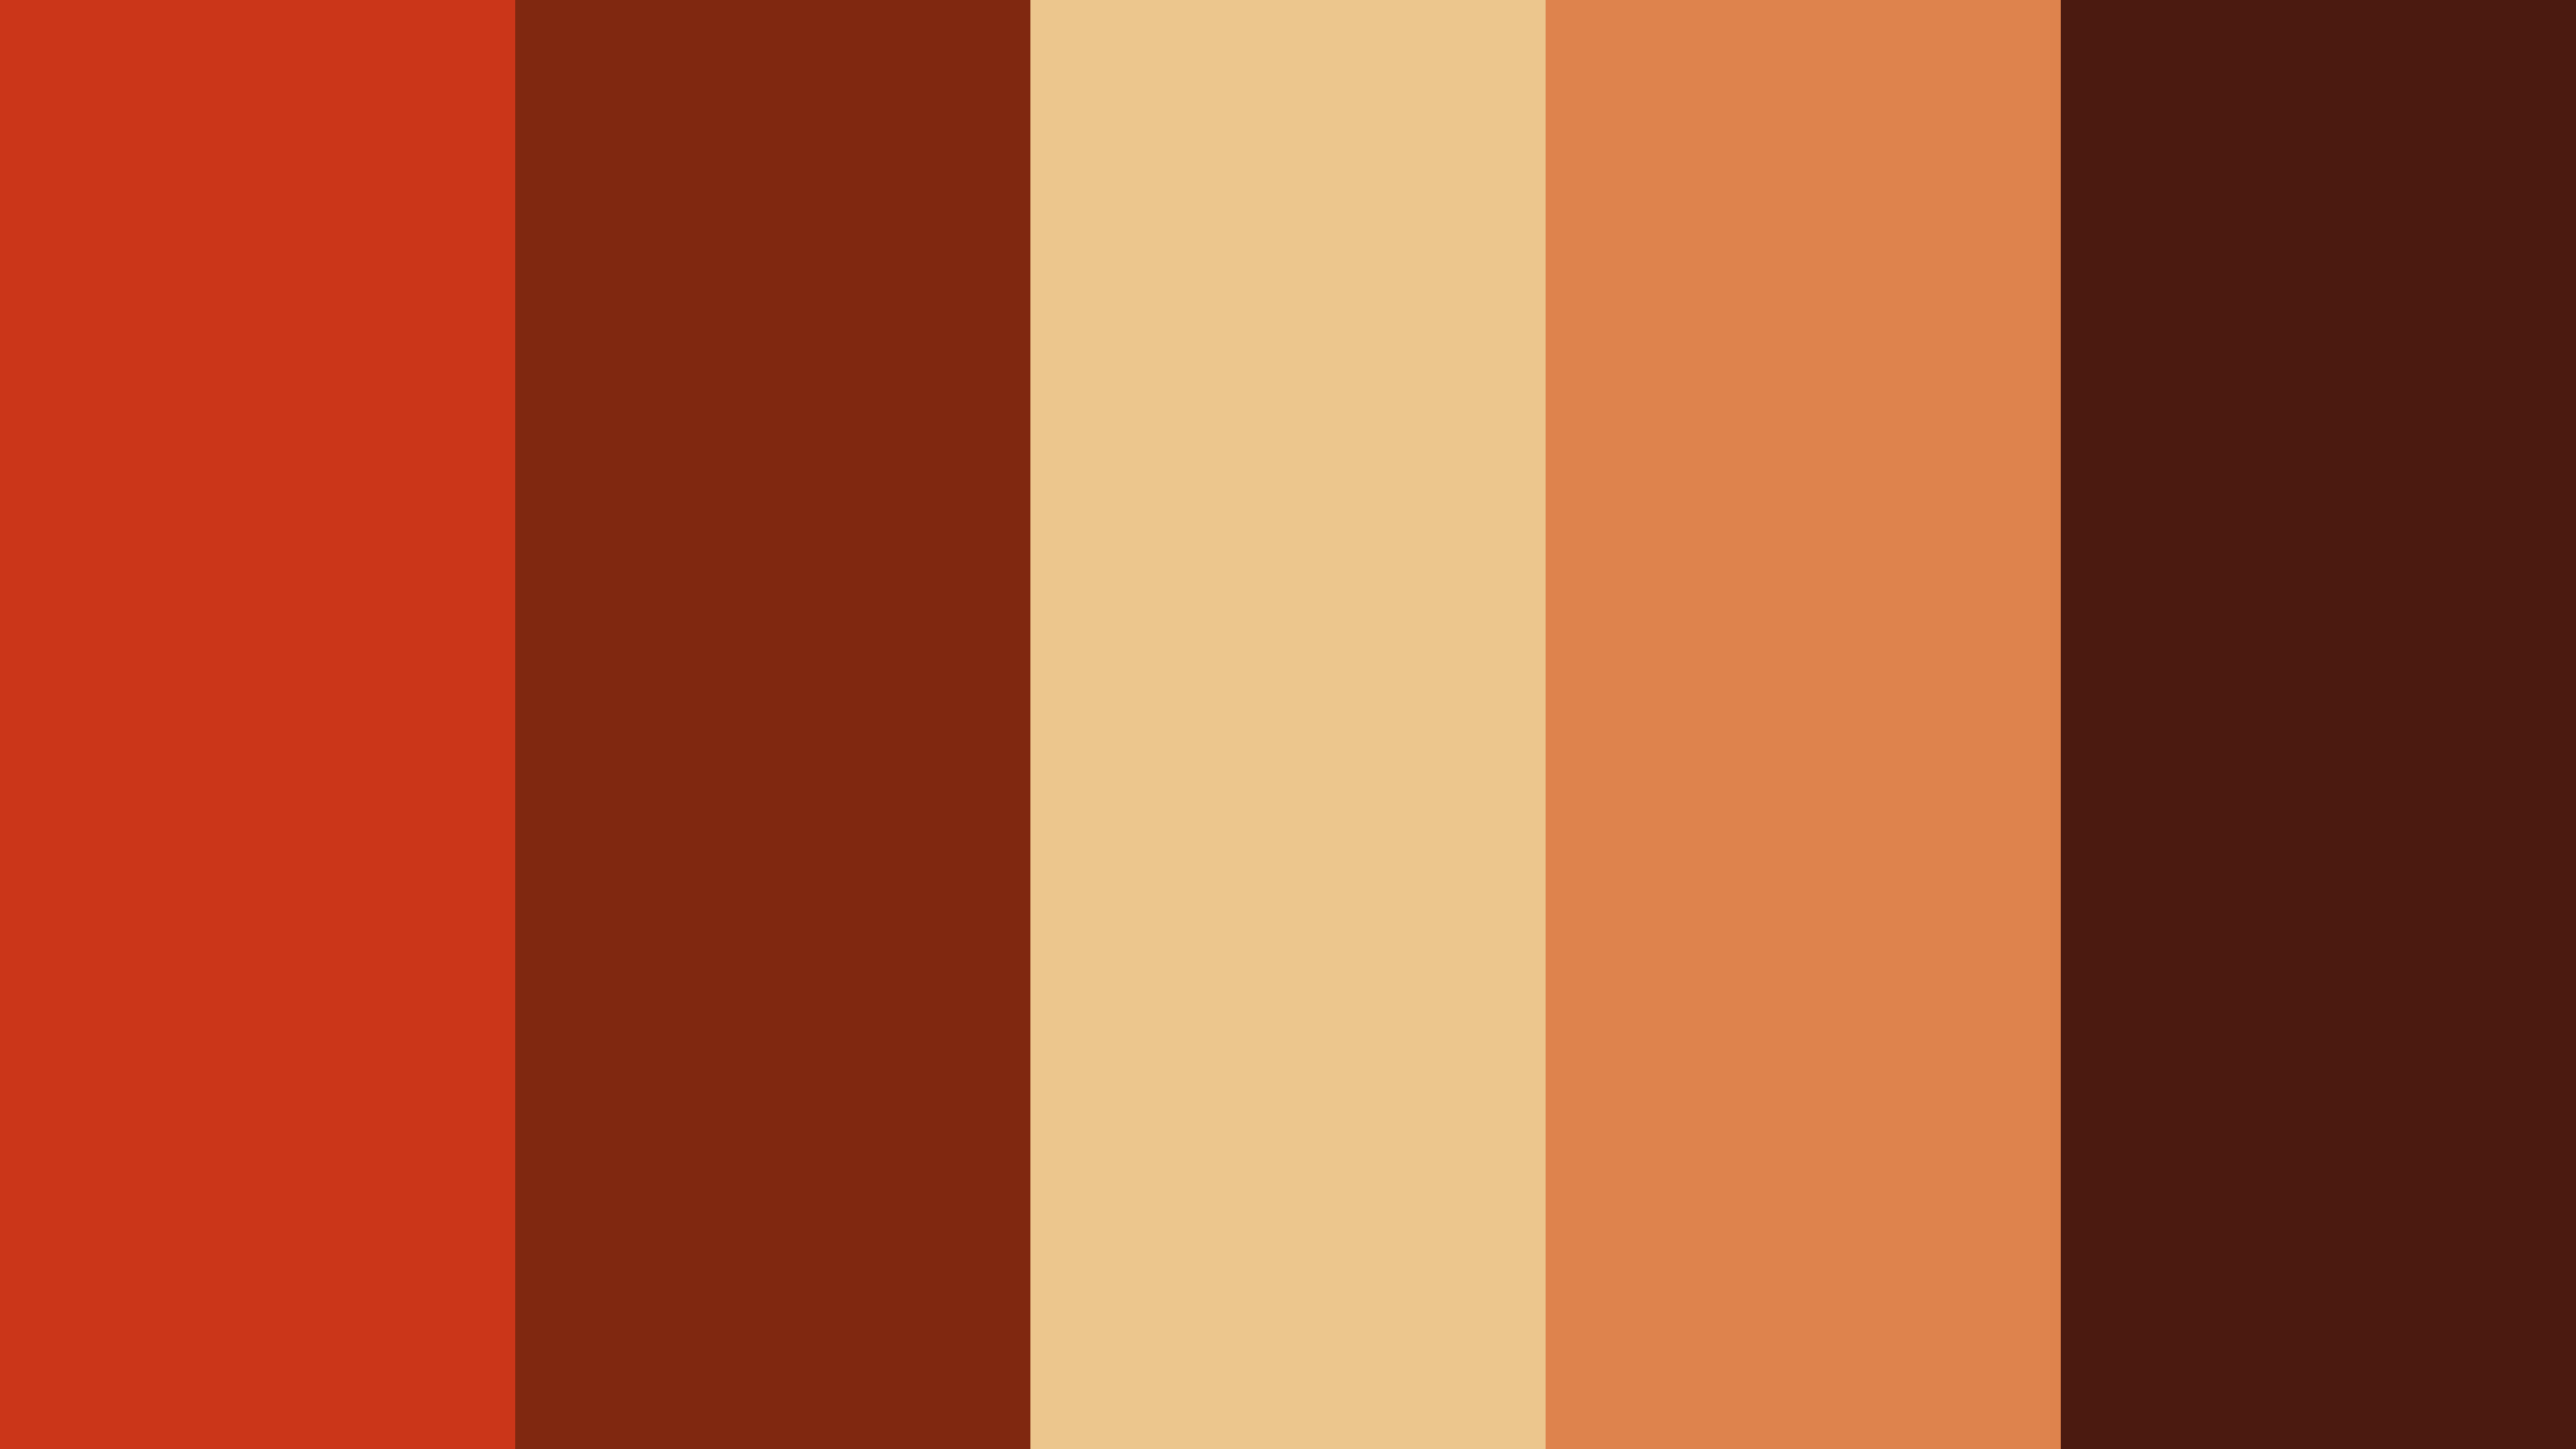 Terra Cotta Brown #8f2100 color hex codes and harmonies - ral 3013,  Terracotta Brown, Dark Burnt Orange, Deep Burnt Orange, grenadier red oil  pkg., Roasted Pumpkin, red carriage, ral 3001